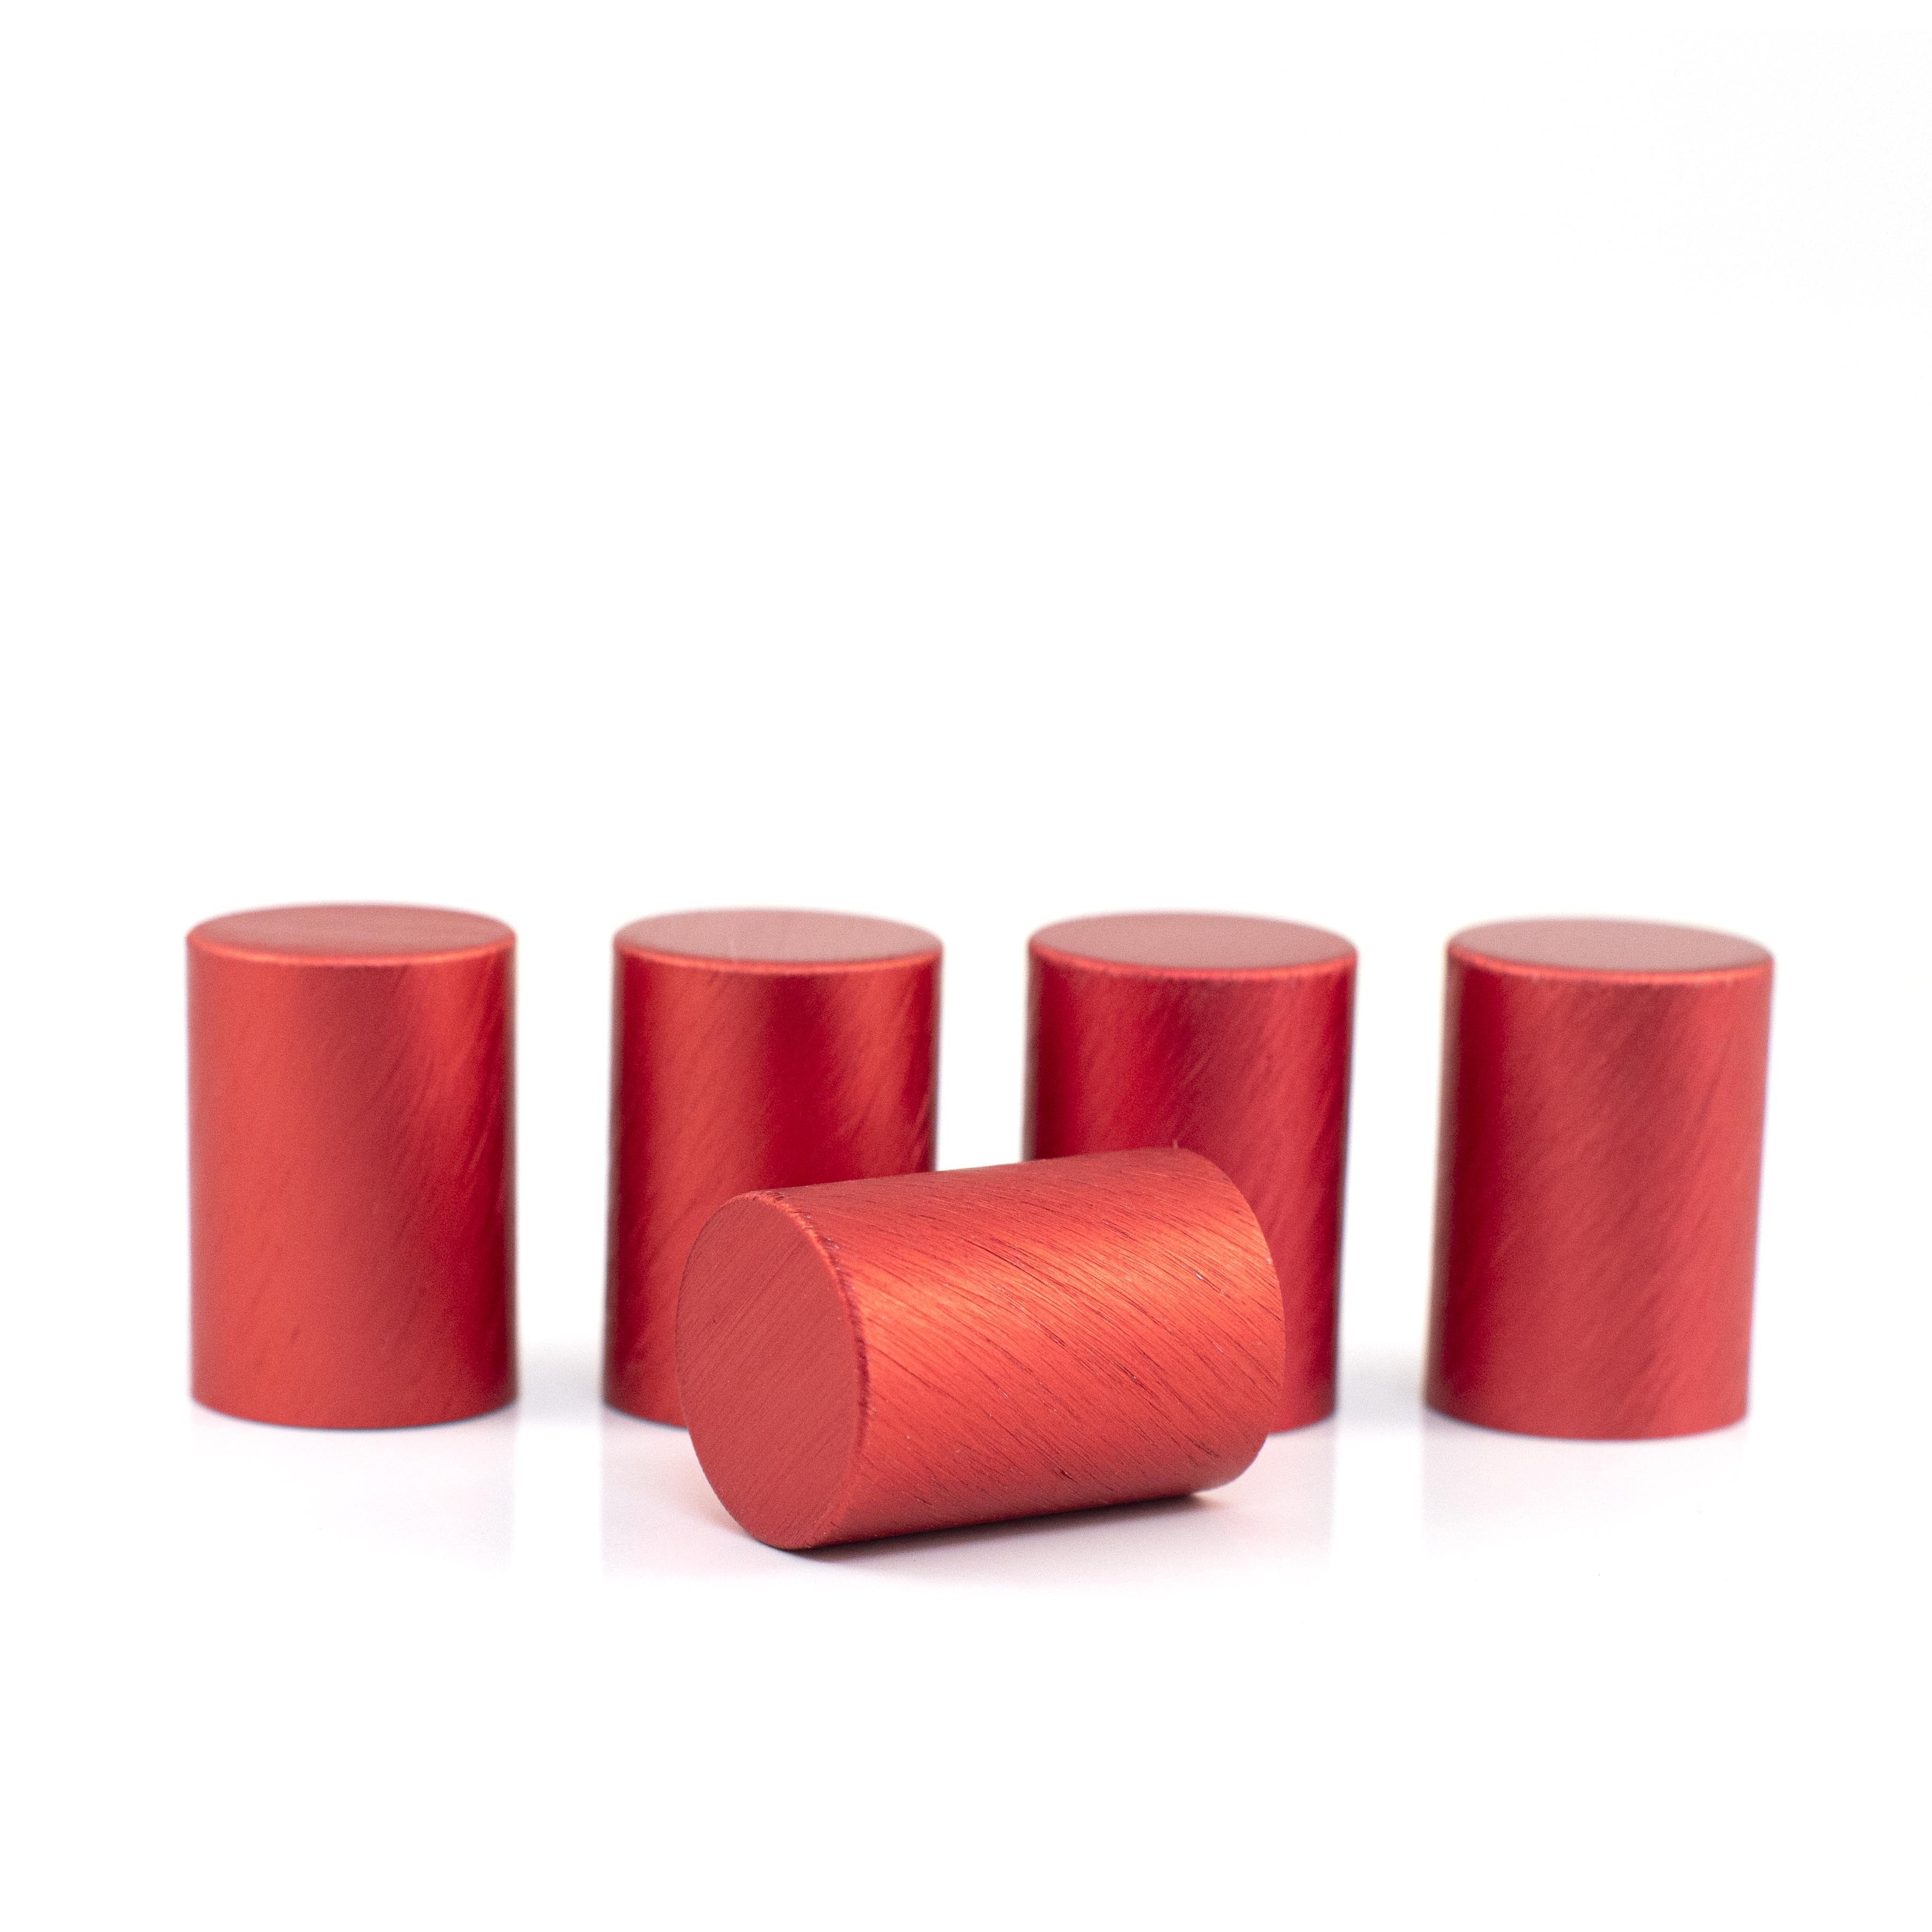 Fém kupakok (5 darab) Roll-on üveghengerhez, Piros színben